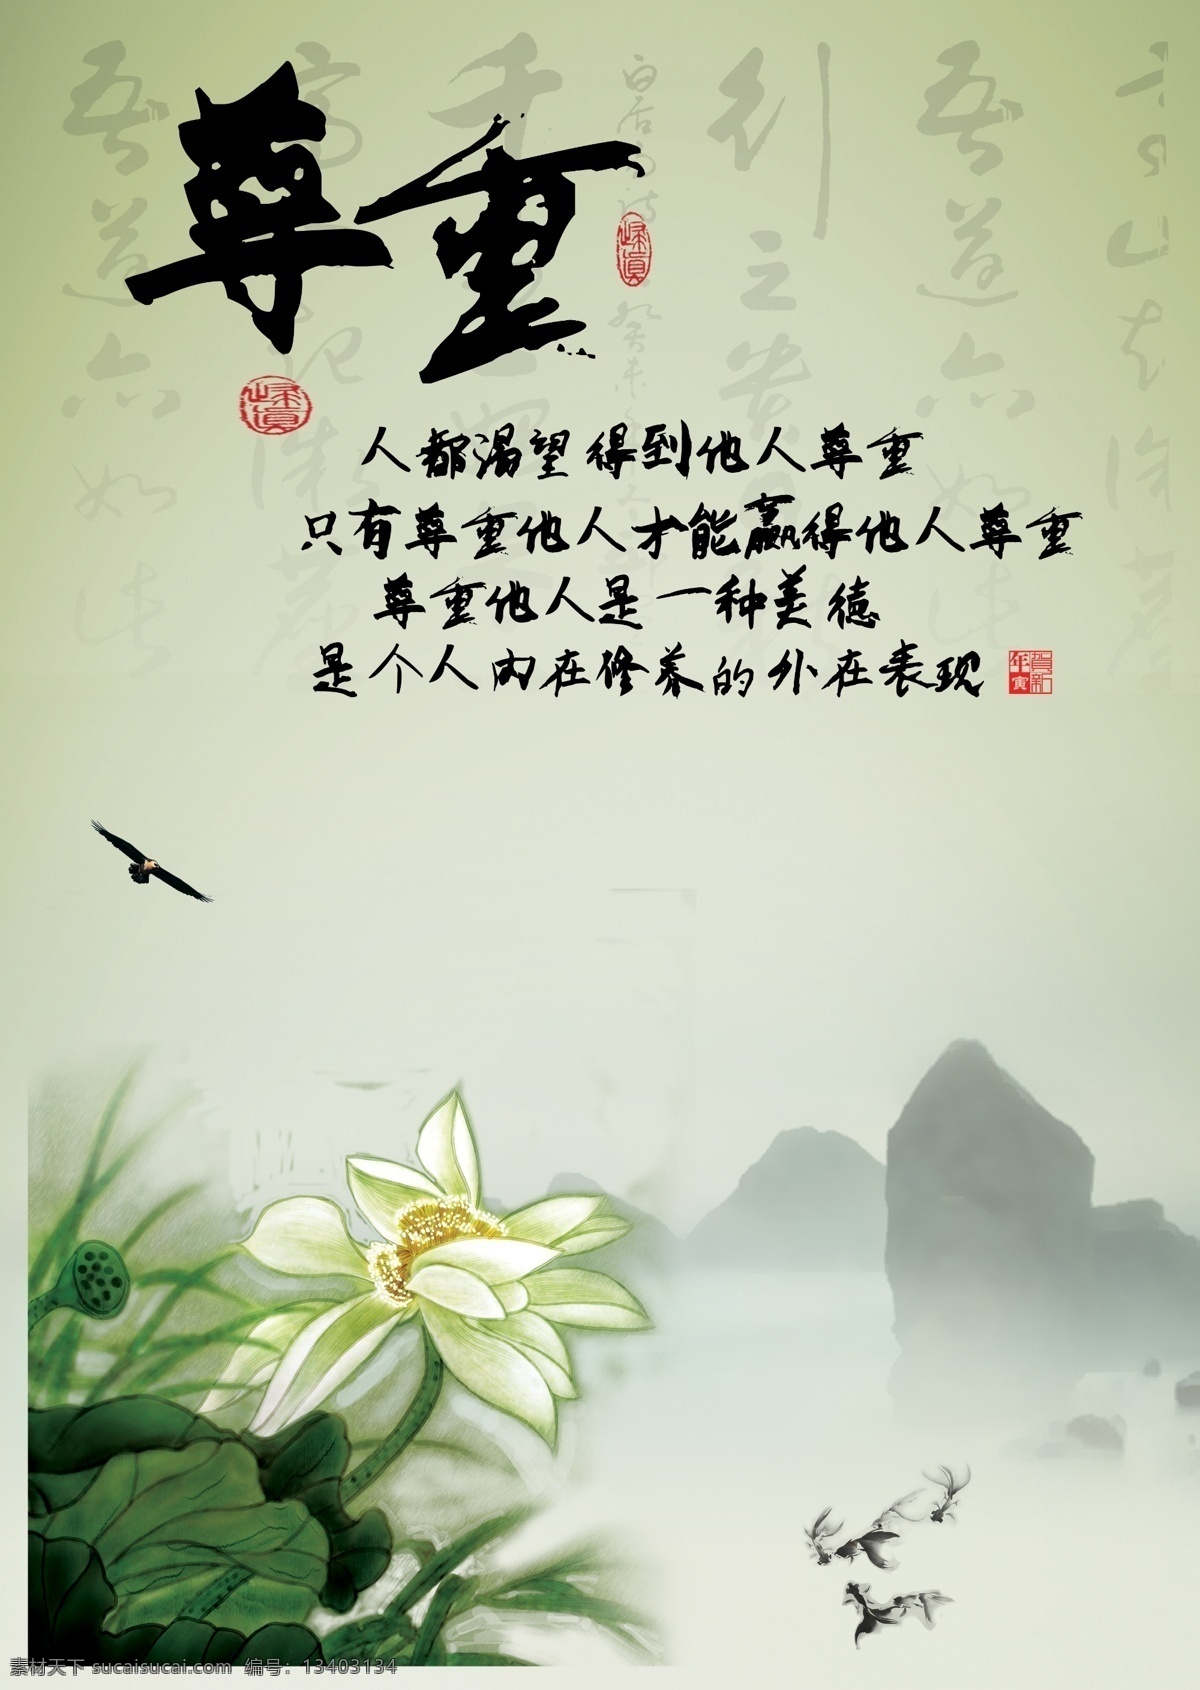 中国 风 校园文化 尊重 模版下载 鹰 金鱼 荷花 荷叶 翠鸟 远山 办公室展板 展板模板 广告设计模板 源文件